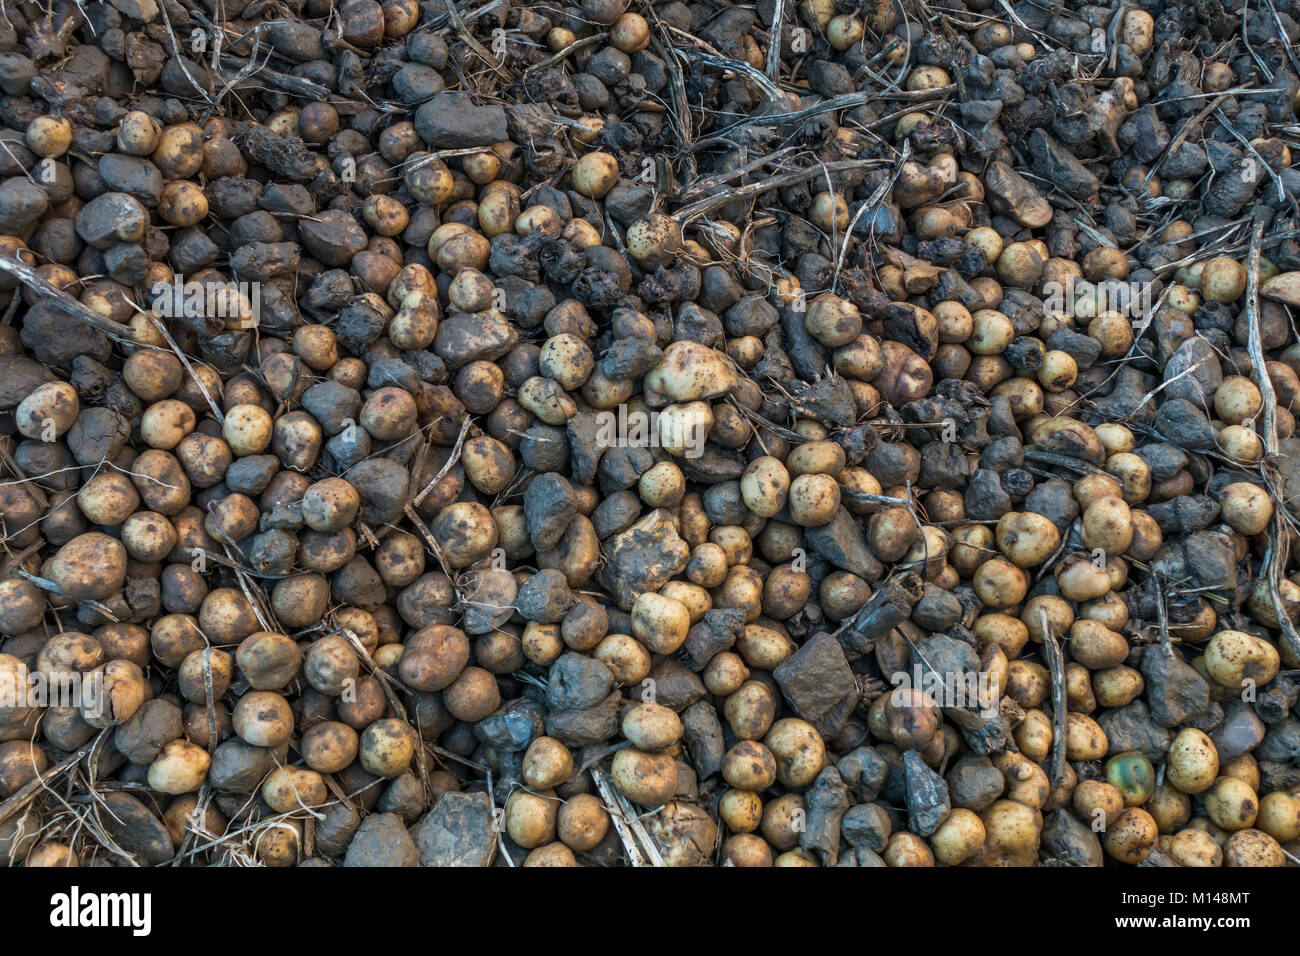 Mélange de pommes de terre et de pierres laissés par un paysan sur terrain. Pays-bas Banque D'Images